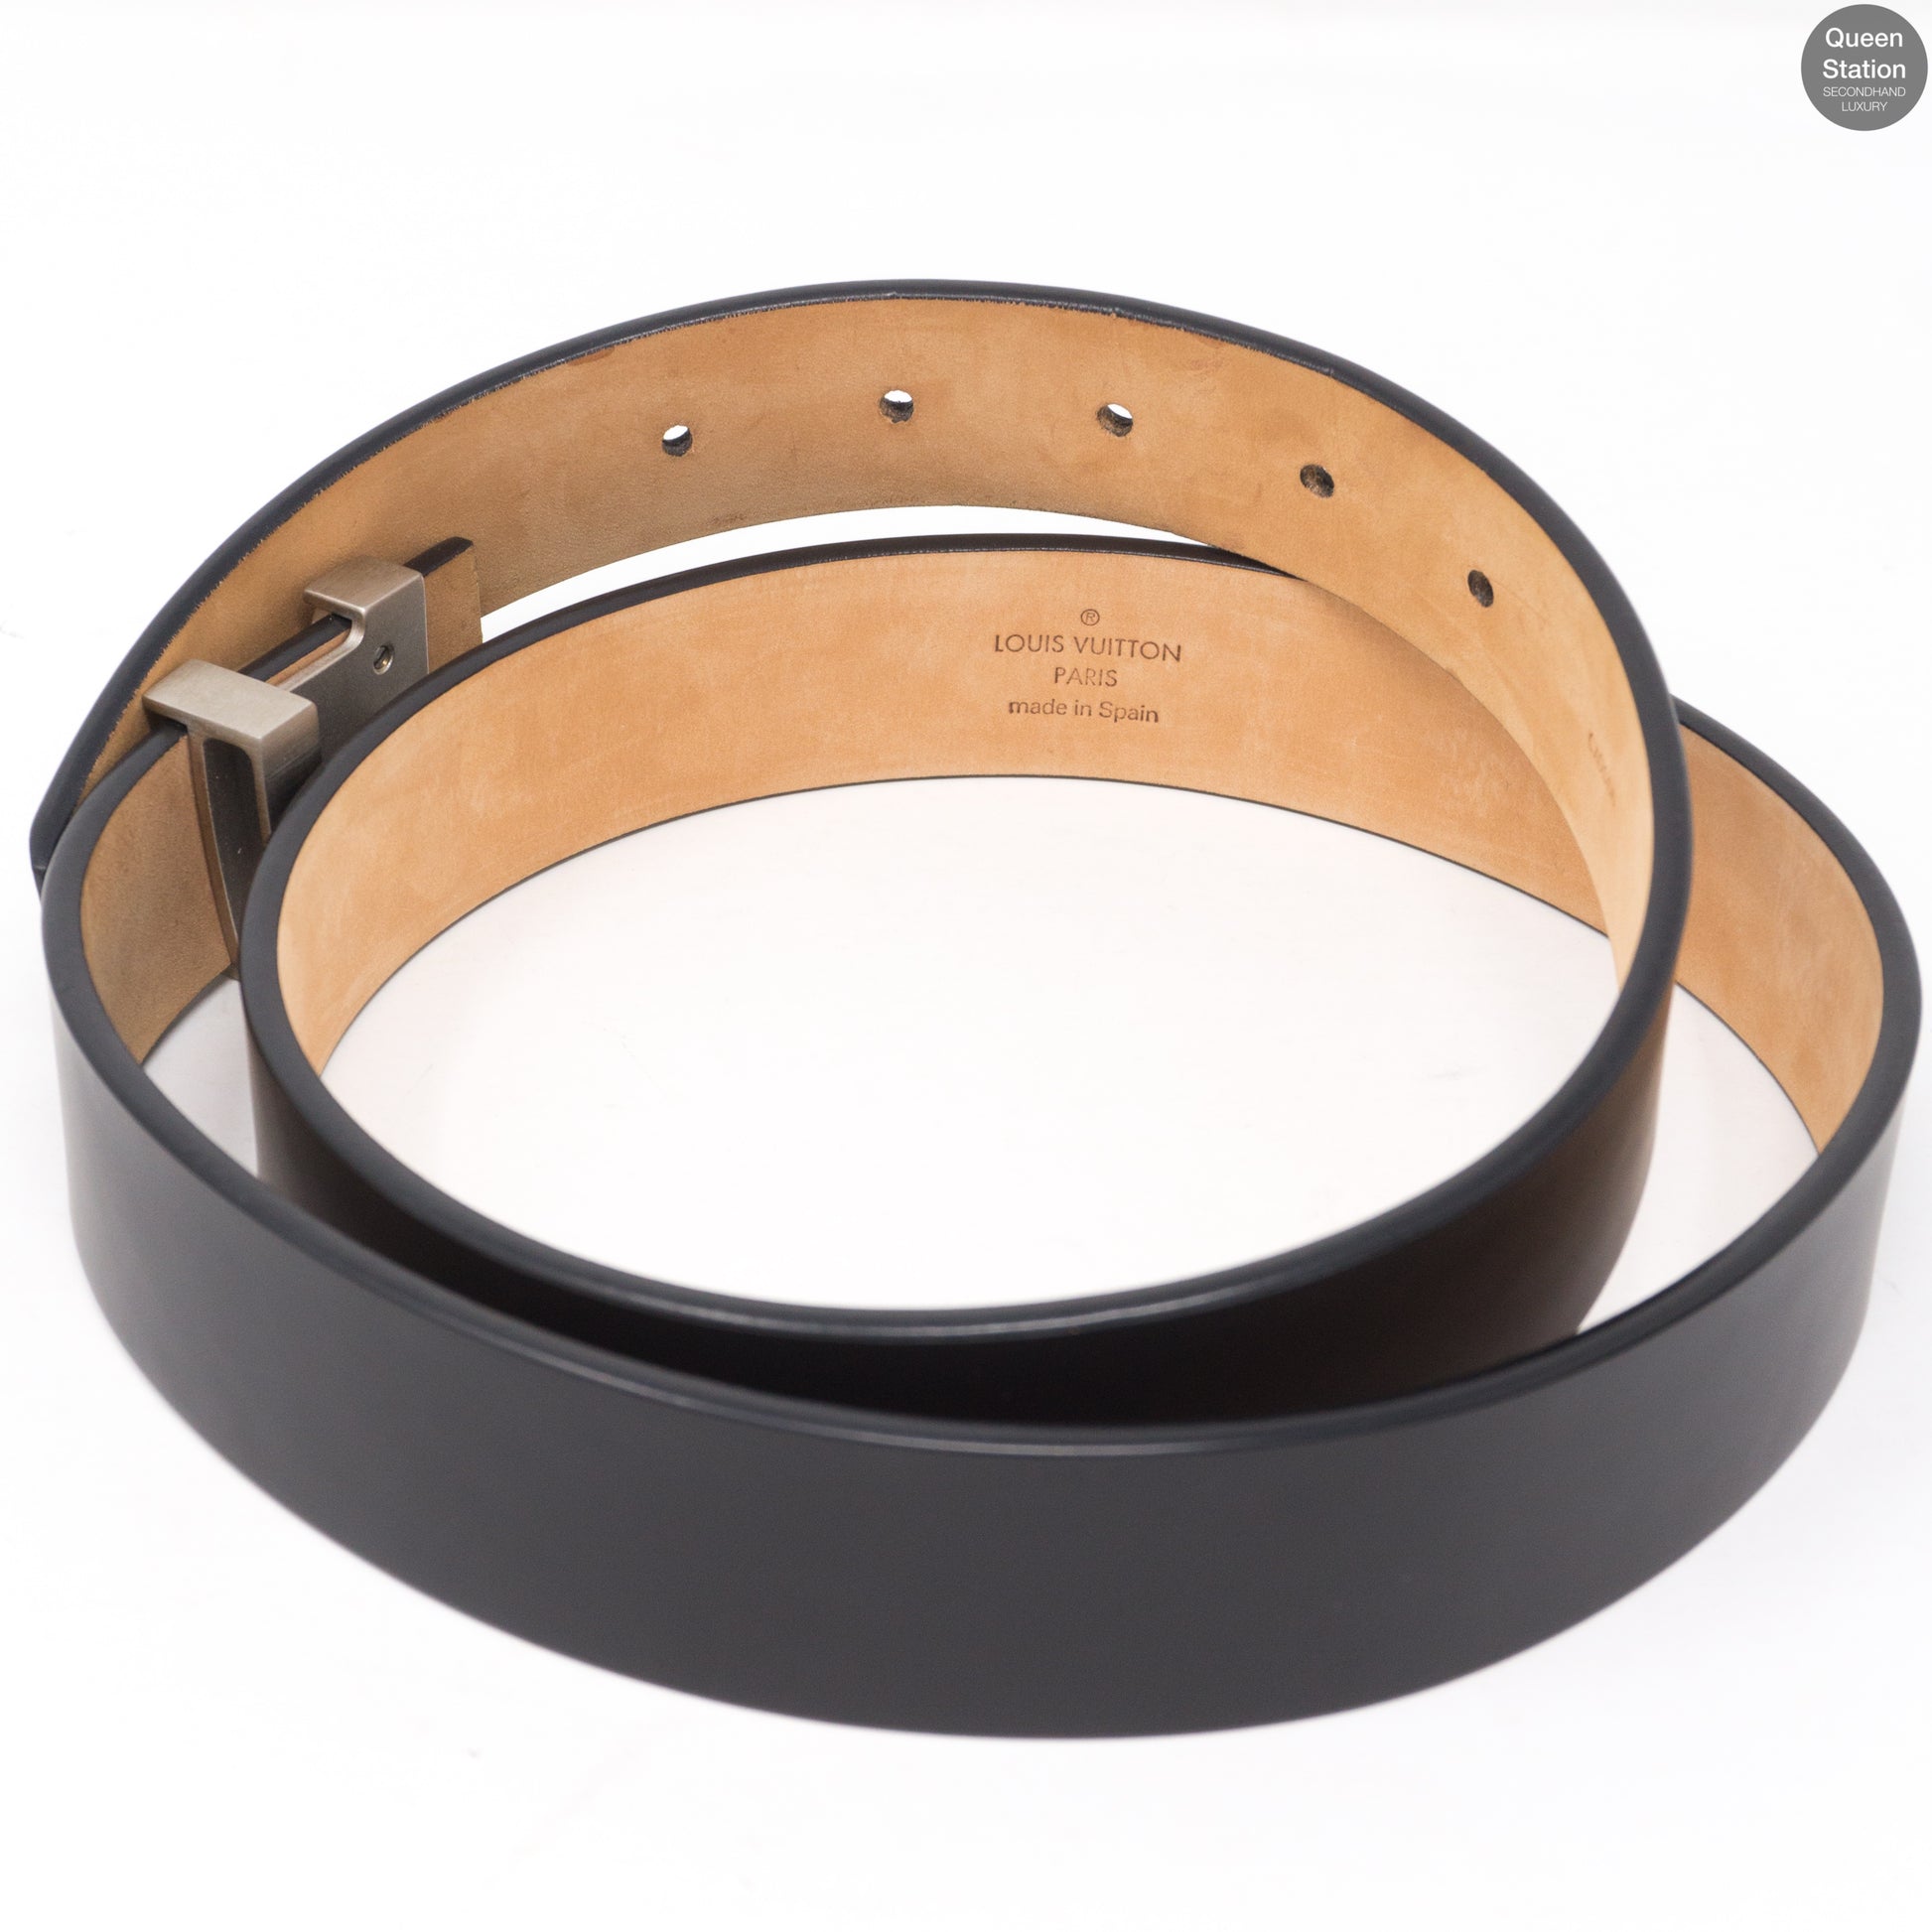 Louis Vuitton 2018 LV Initials Belt Kit - Black Belts, Accessories -  LOU805245